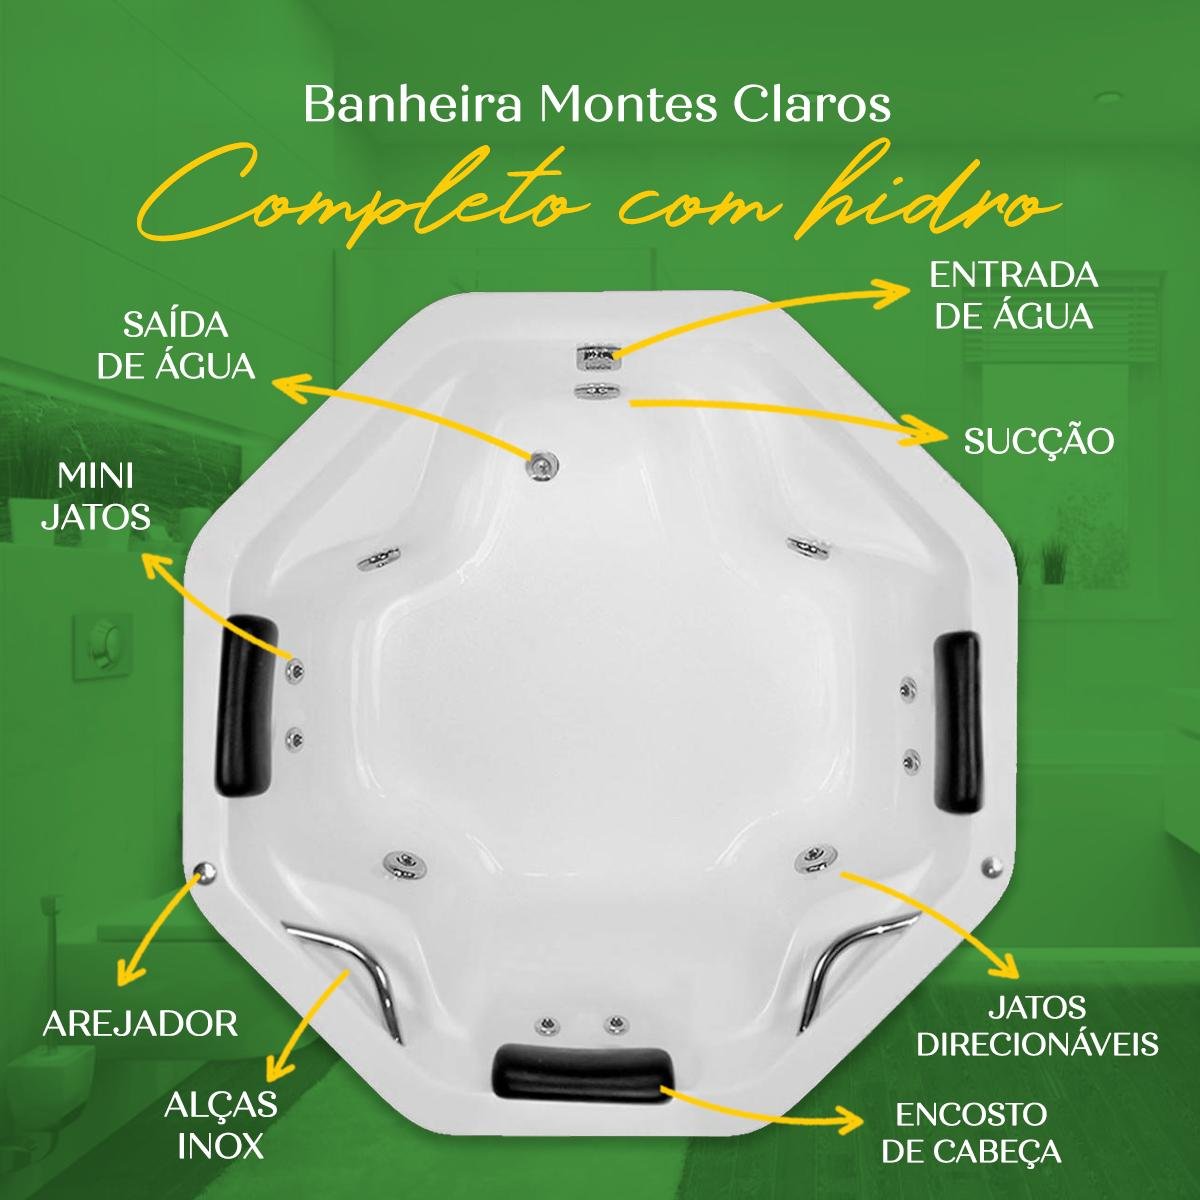 Banheira Redonda Montes Claros Completa com Hidro em Acrílico - 4